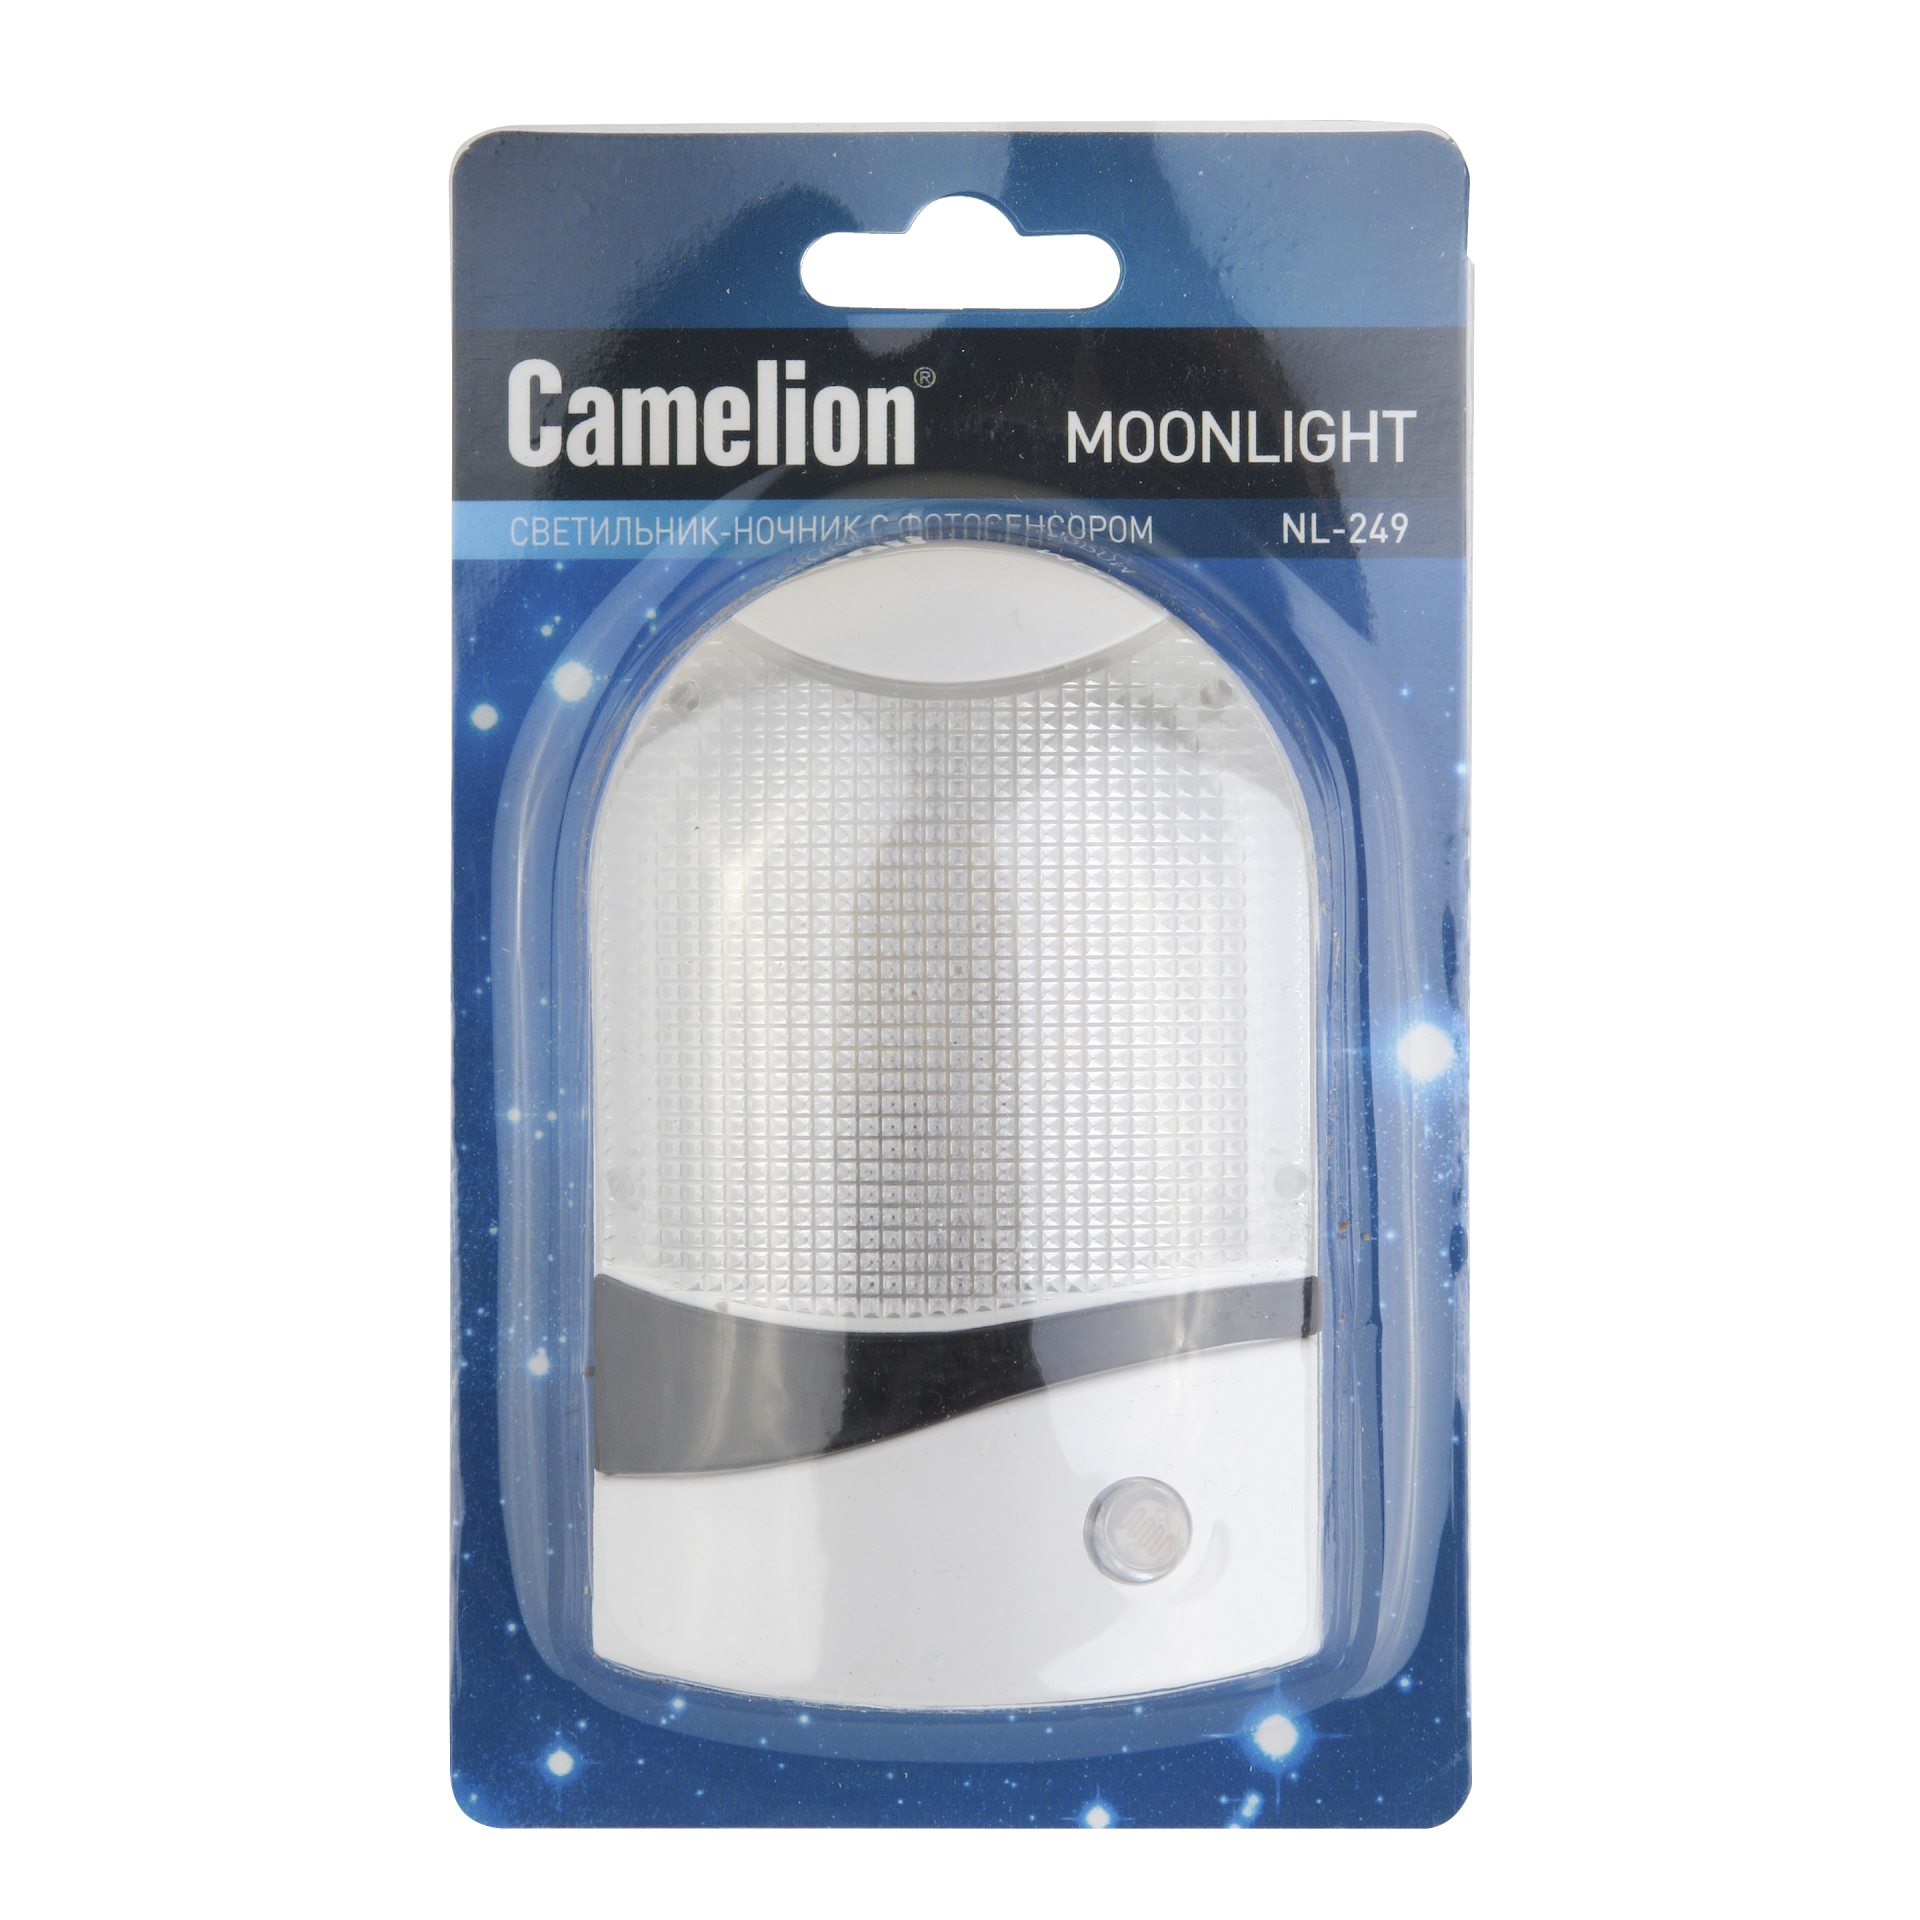 Camelion NL-249 "Ночник с фотосенсором" (LED ночник с фотосенсором, 220В)